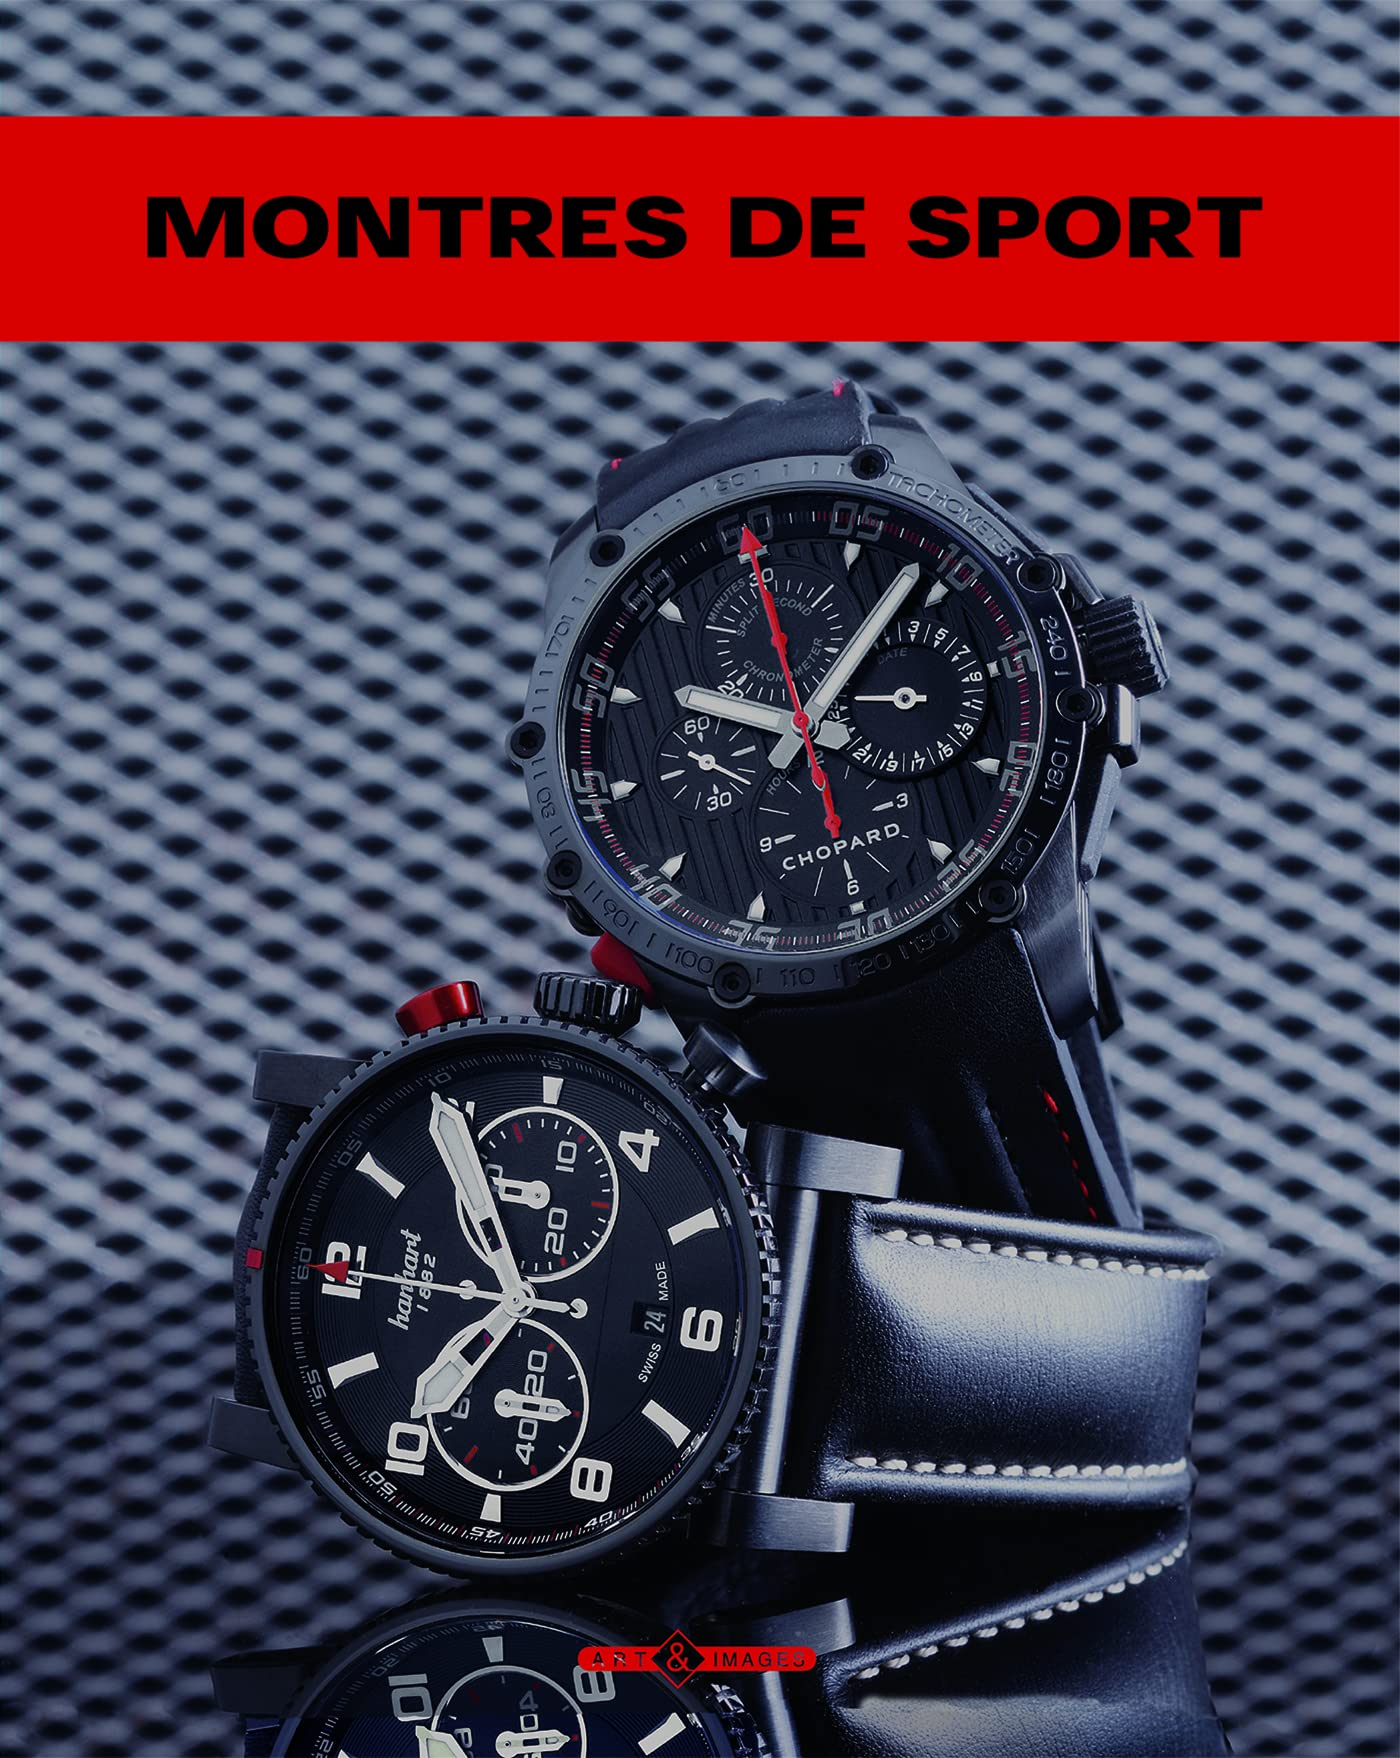 Montres de sport : montres d'aviateur, montres de plongée, chronographes